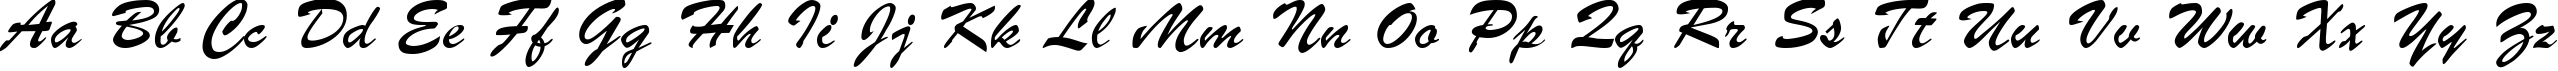 Пример написания английского алфавита шрифтом Parsek